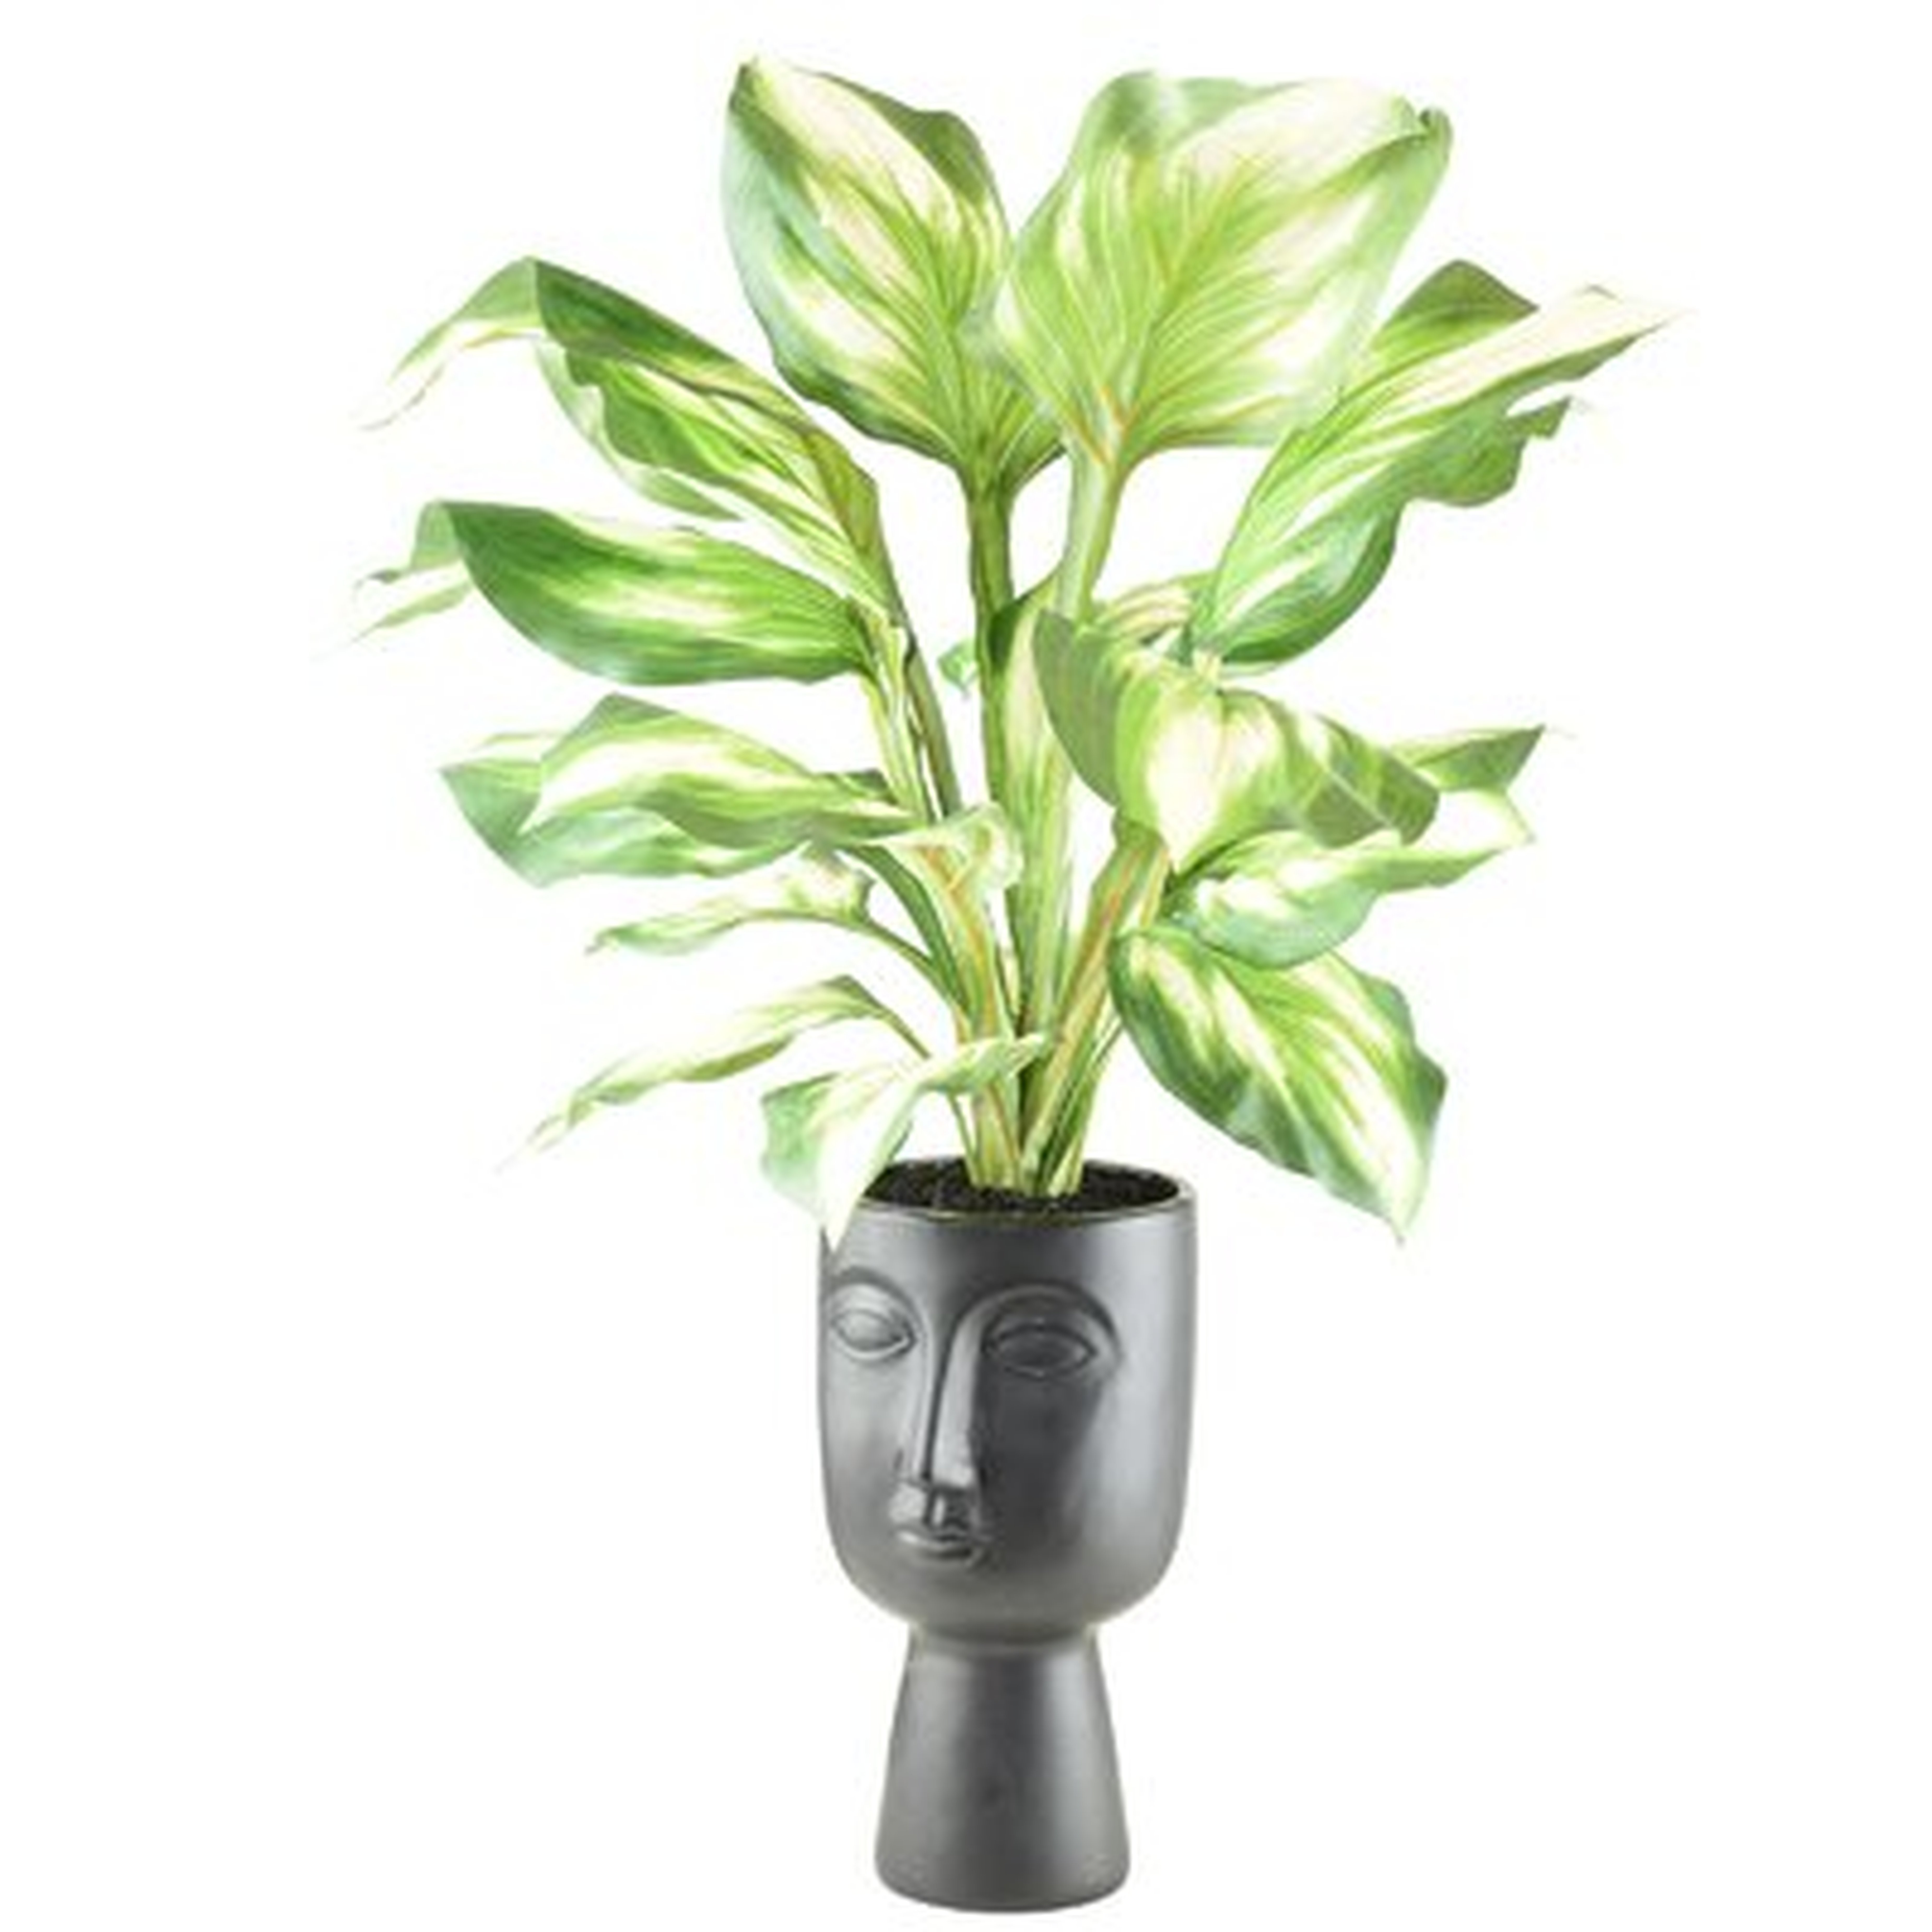 Hosta Plant in Decorative Vase - Wayfair